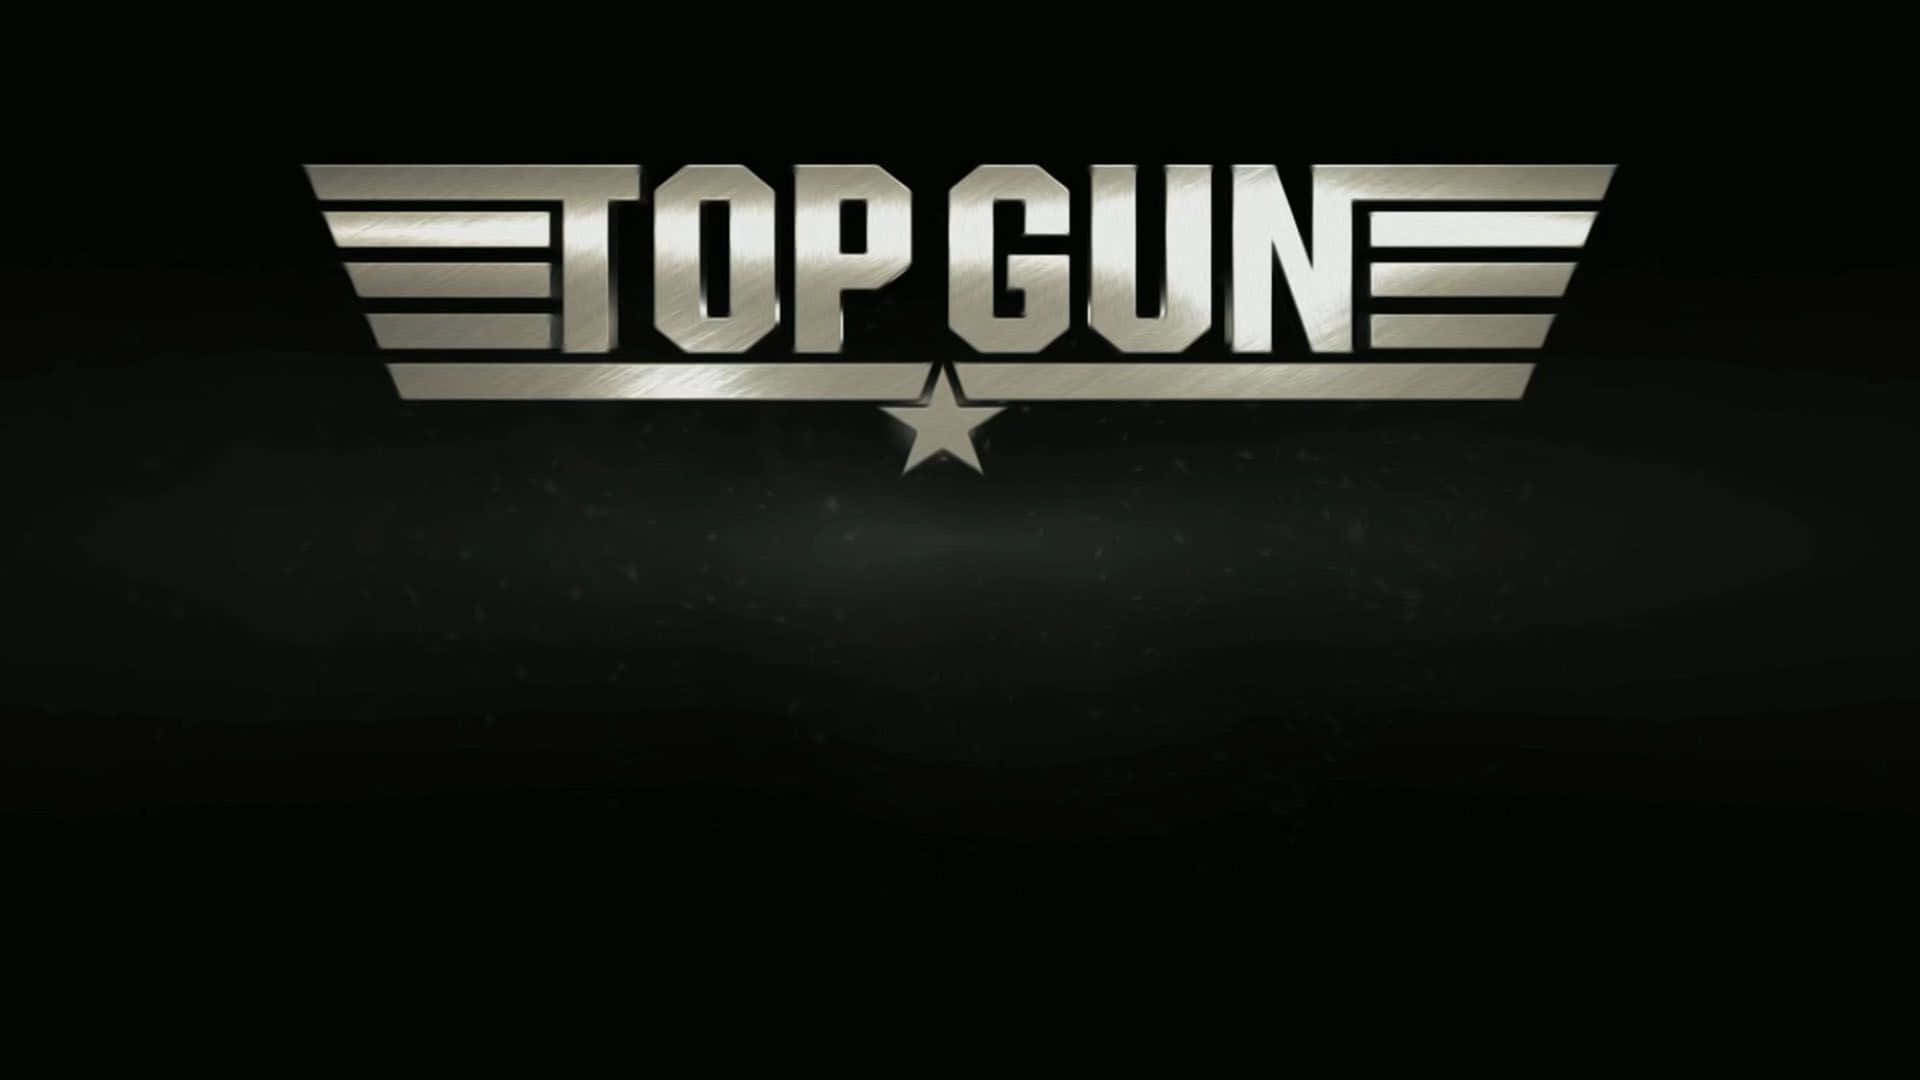 Top Gun 80's Movie Poster Background